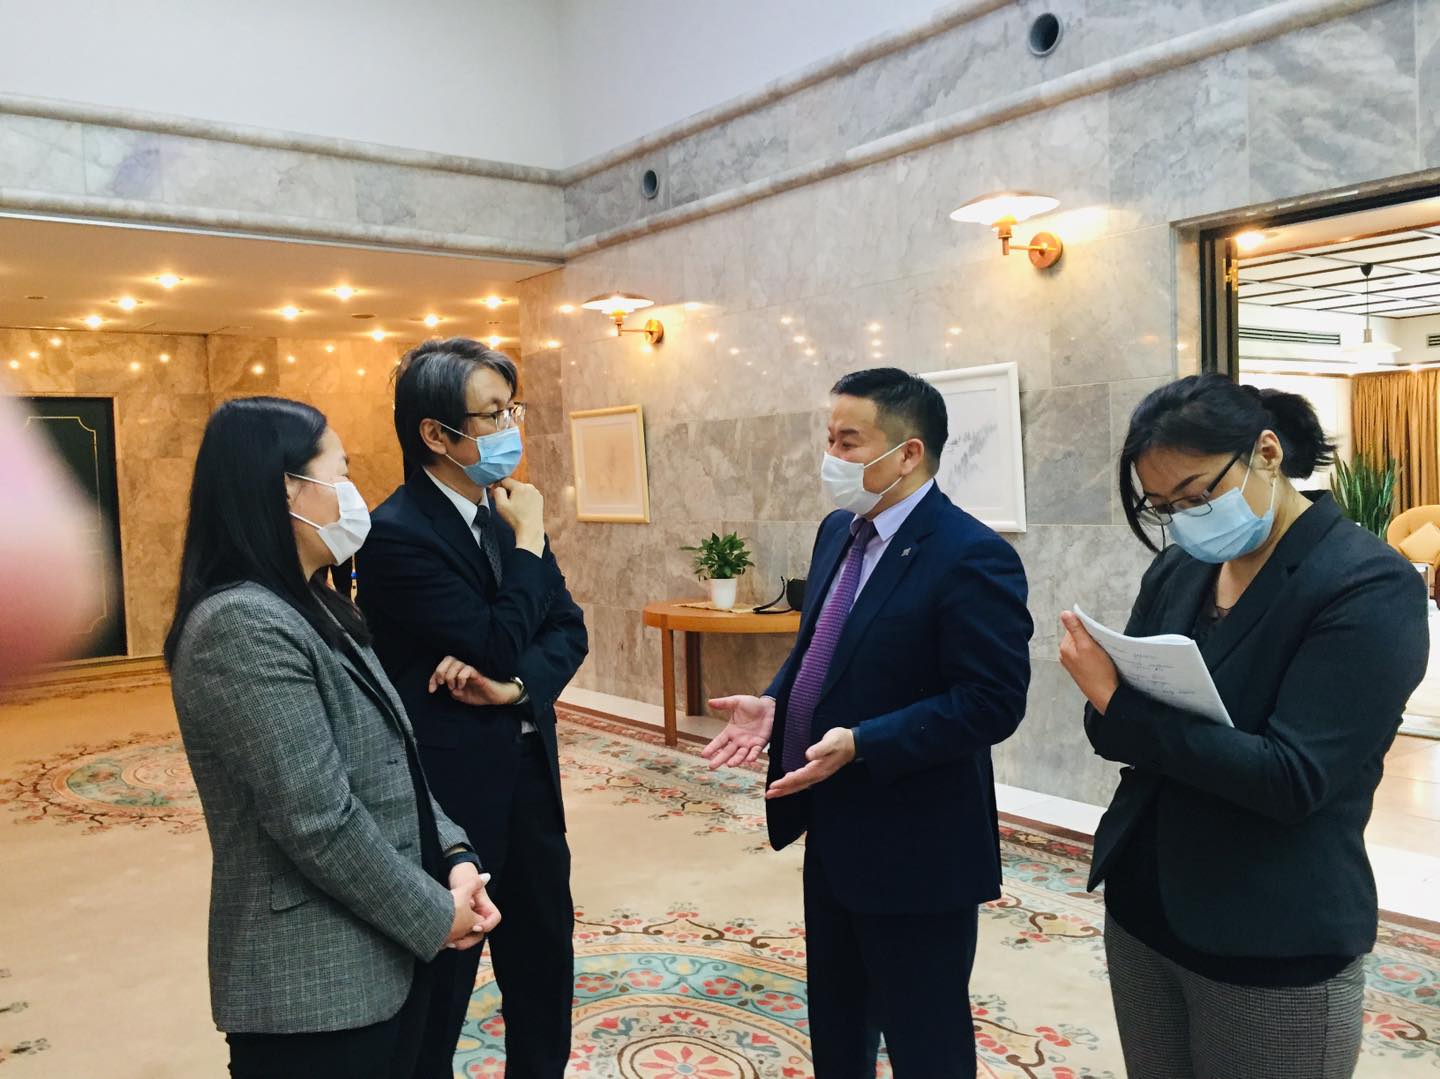 УИХ-ын гишүүн Ж.Сүхбаатар Японы элчин сайдын яаманд зохиогдож буй төсөлтэй танилцлаа